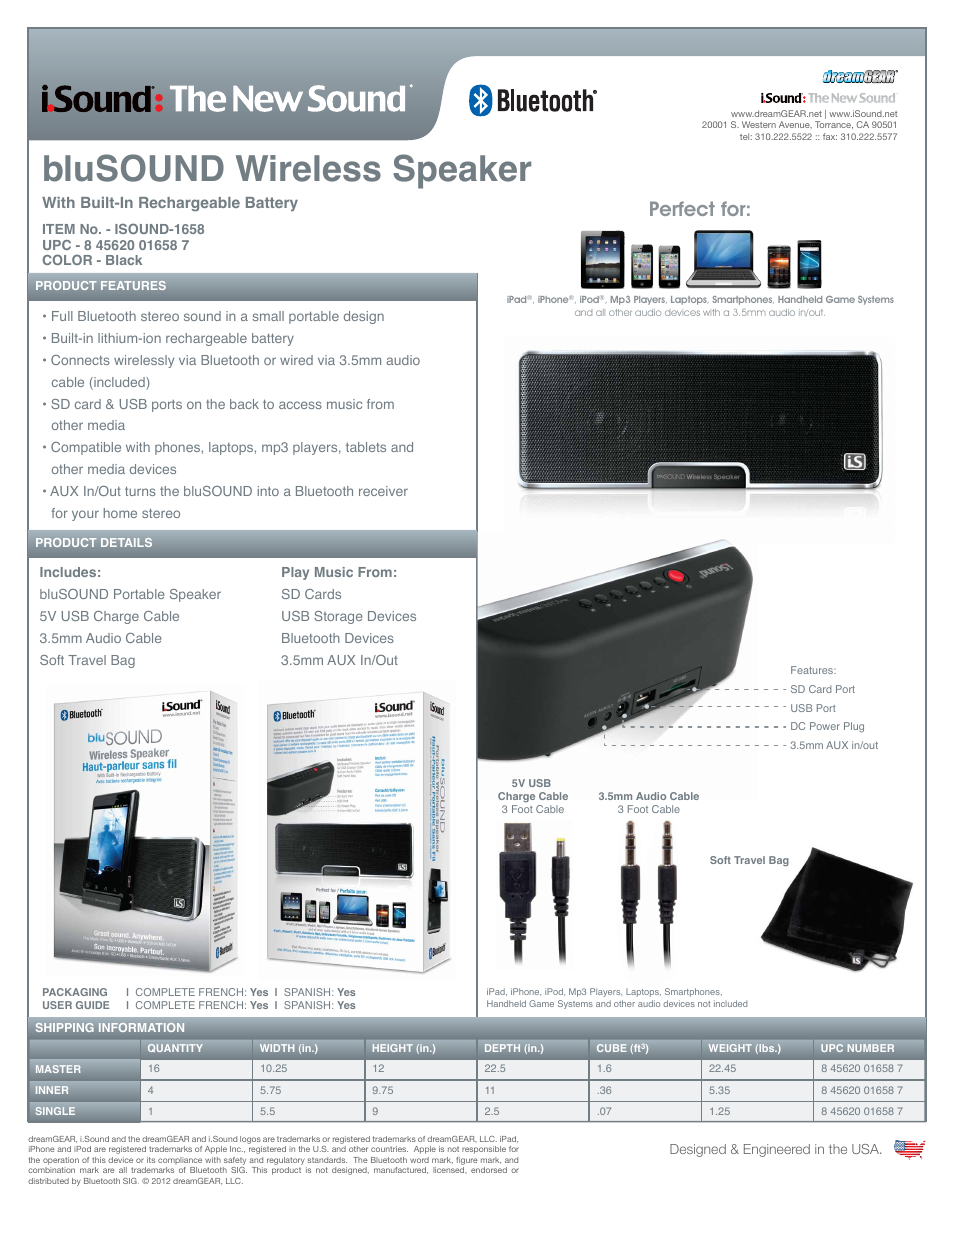 bluSOUND Wireless Speaker - Sell Sheet